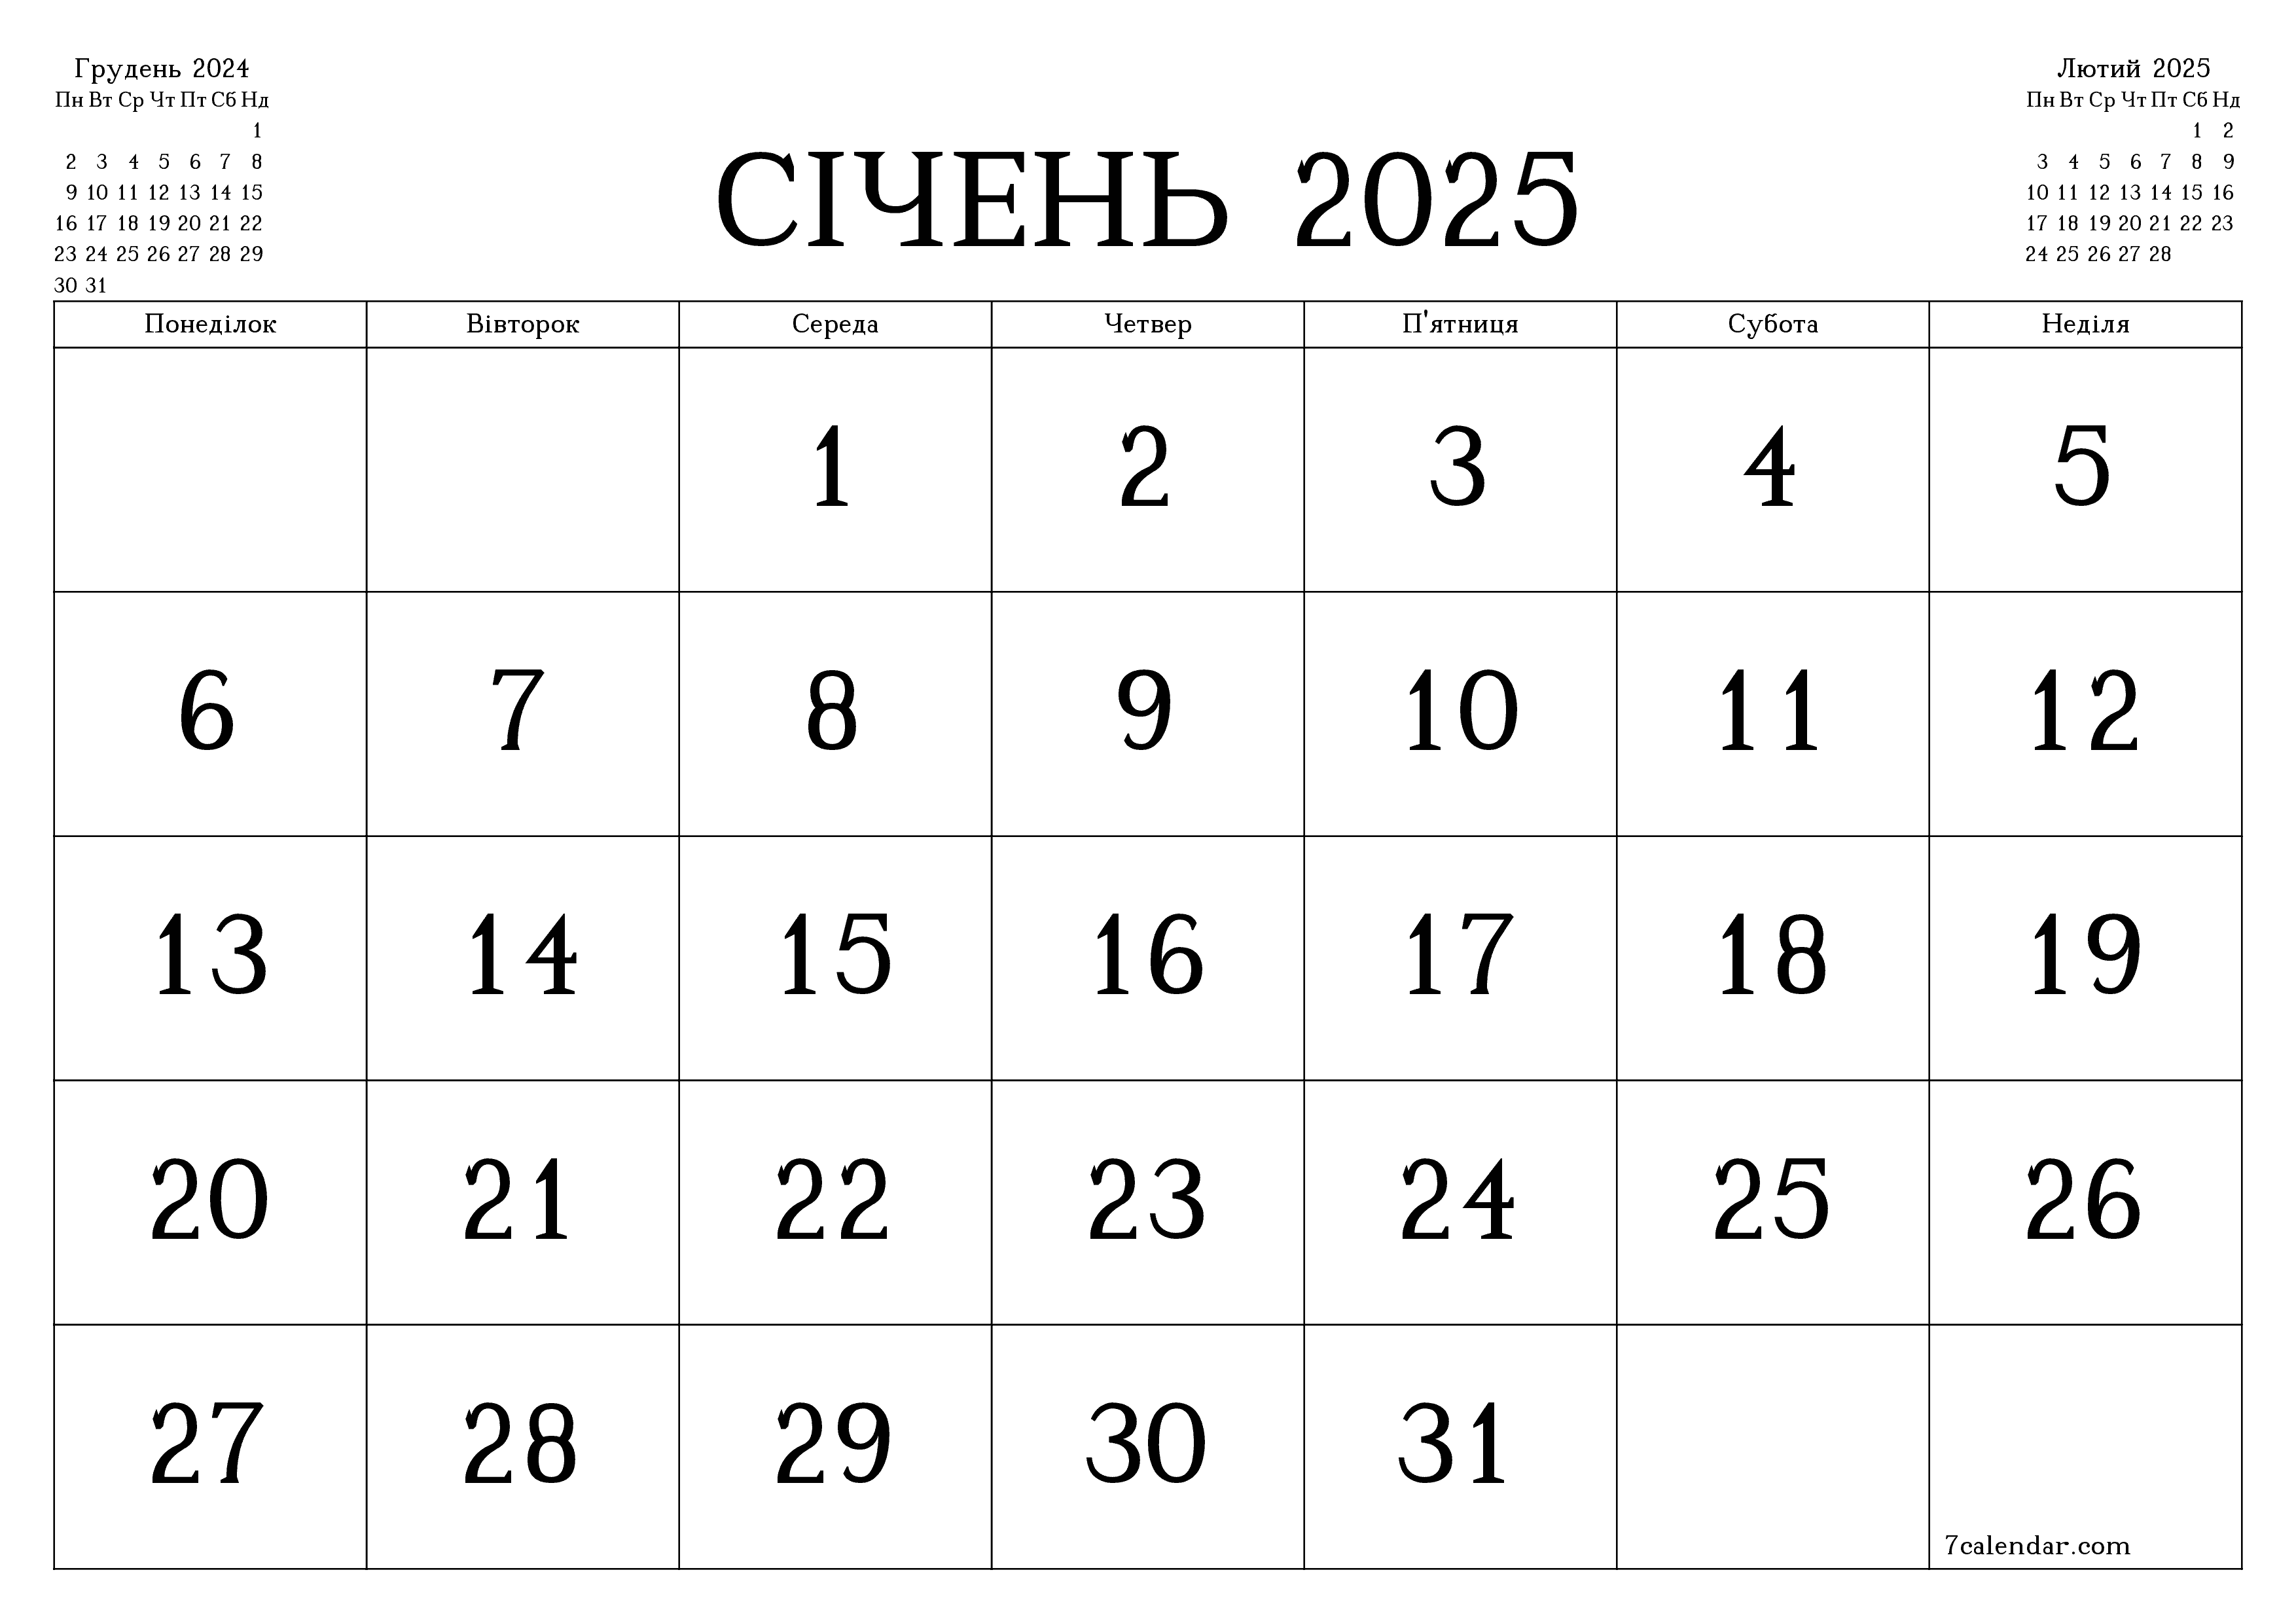  для друку настінний шаблон я безкоштовний горизонтальний Щомісячний календар Січень (Січ) 2025